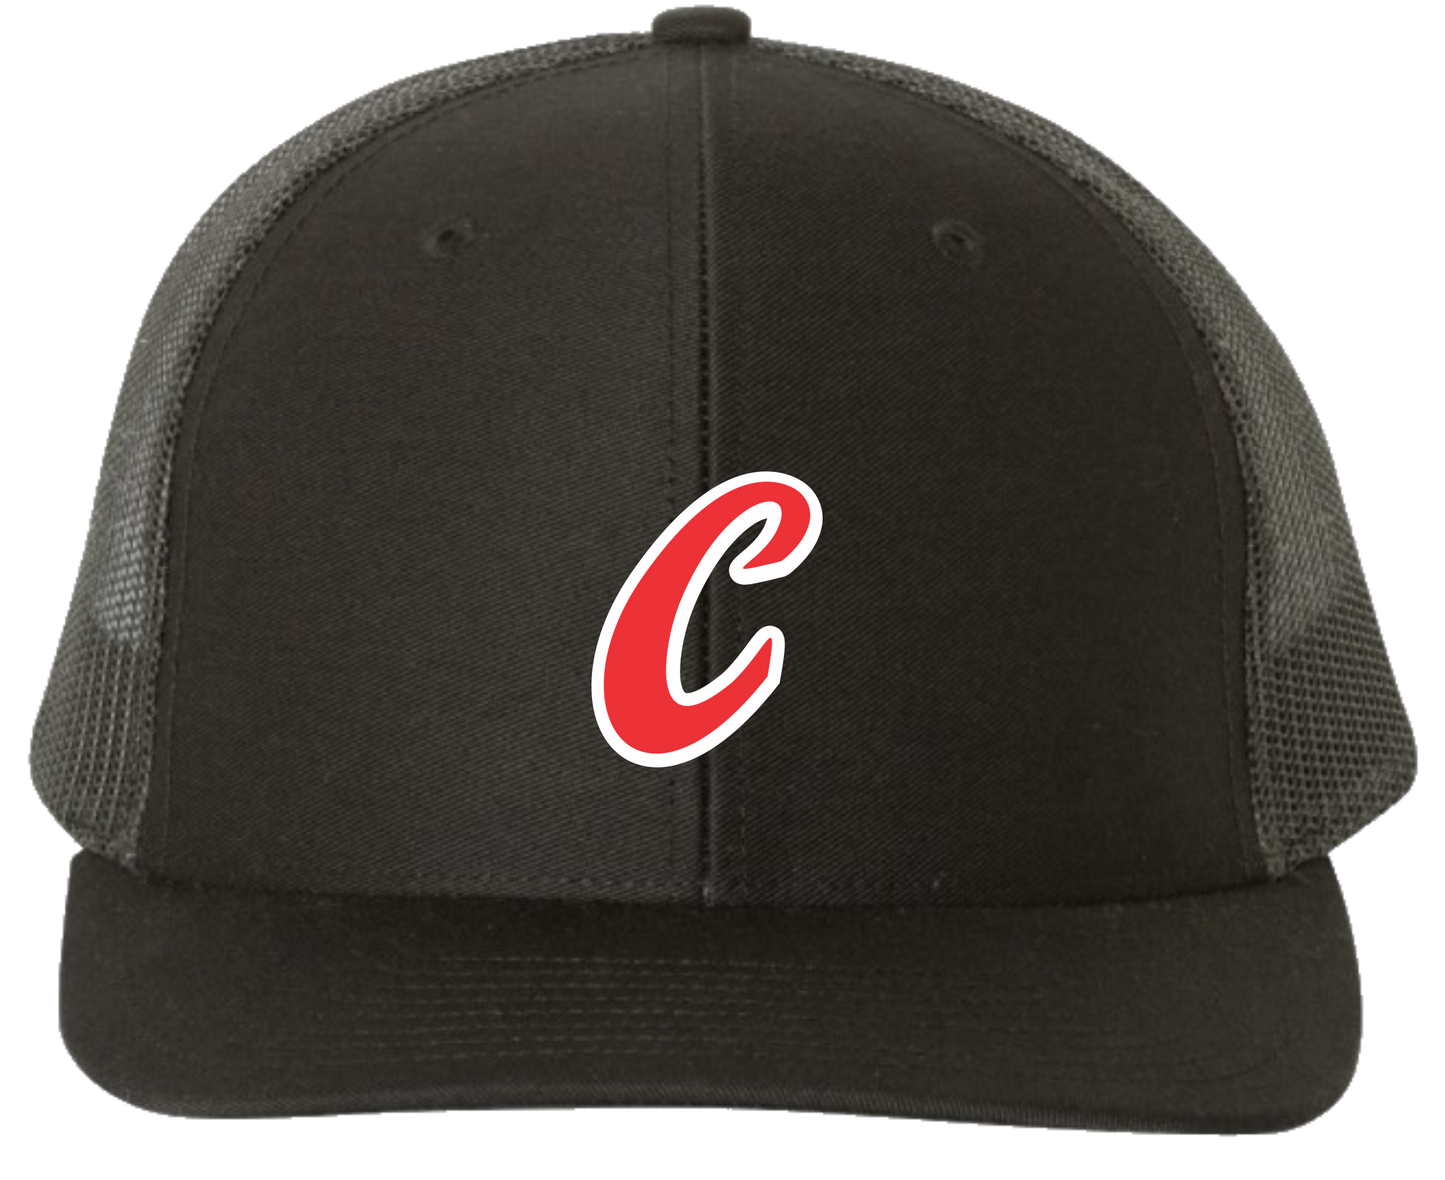 Carnarvon Ball Club Trucker Hat